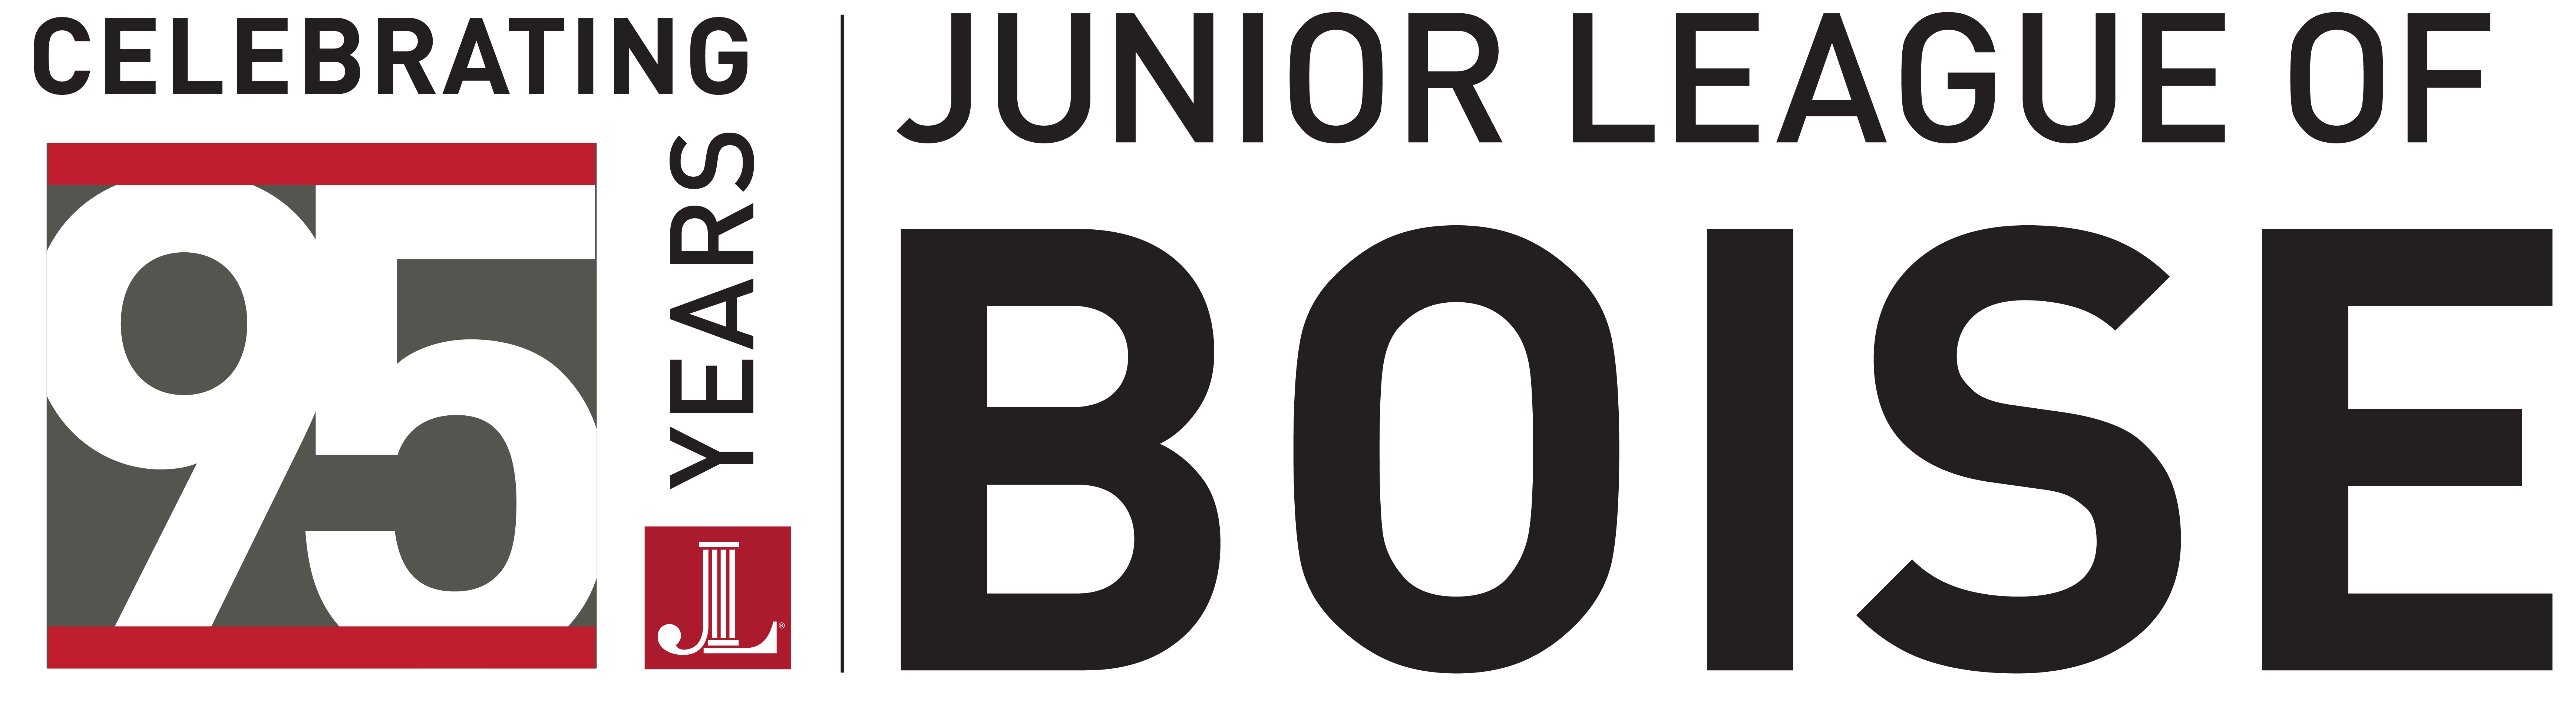 The Junior League of Boise